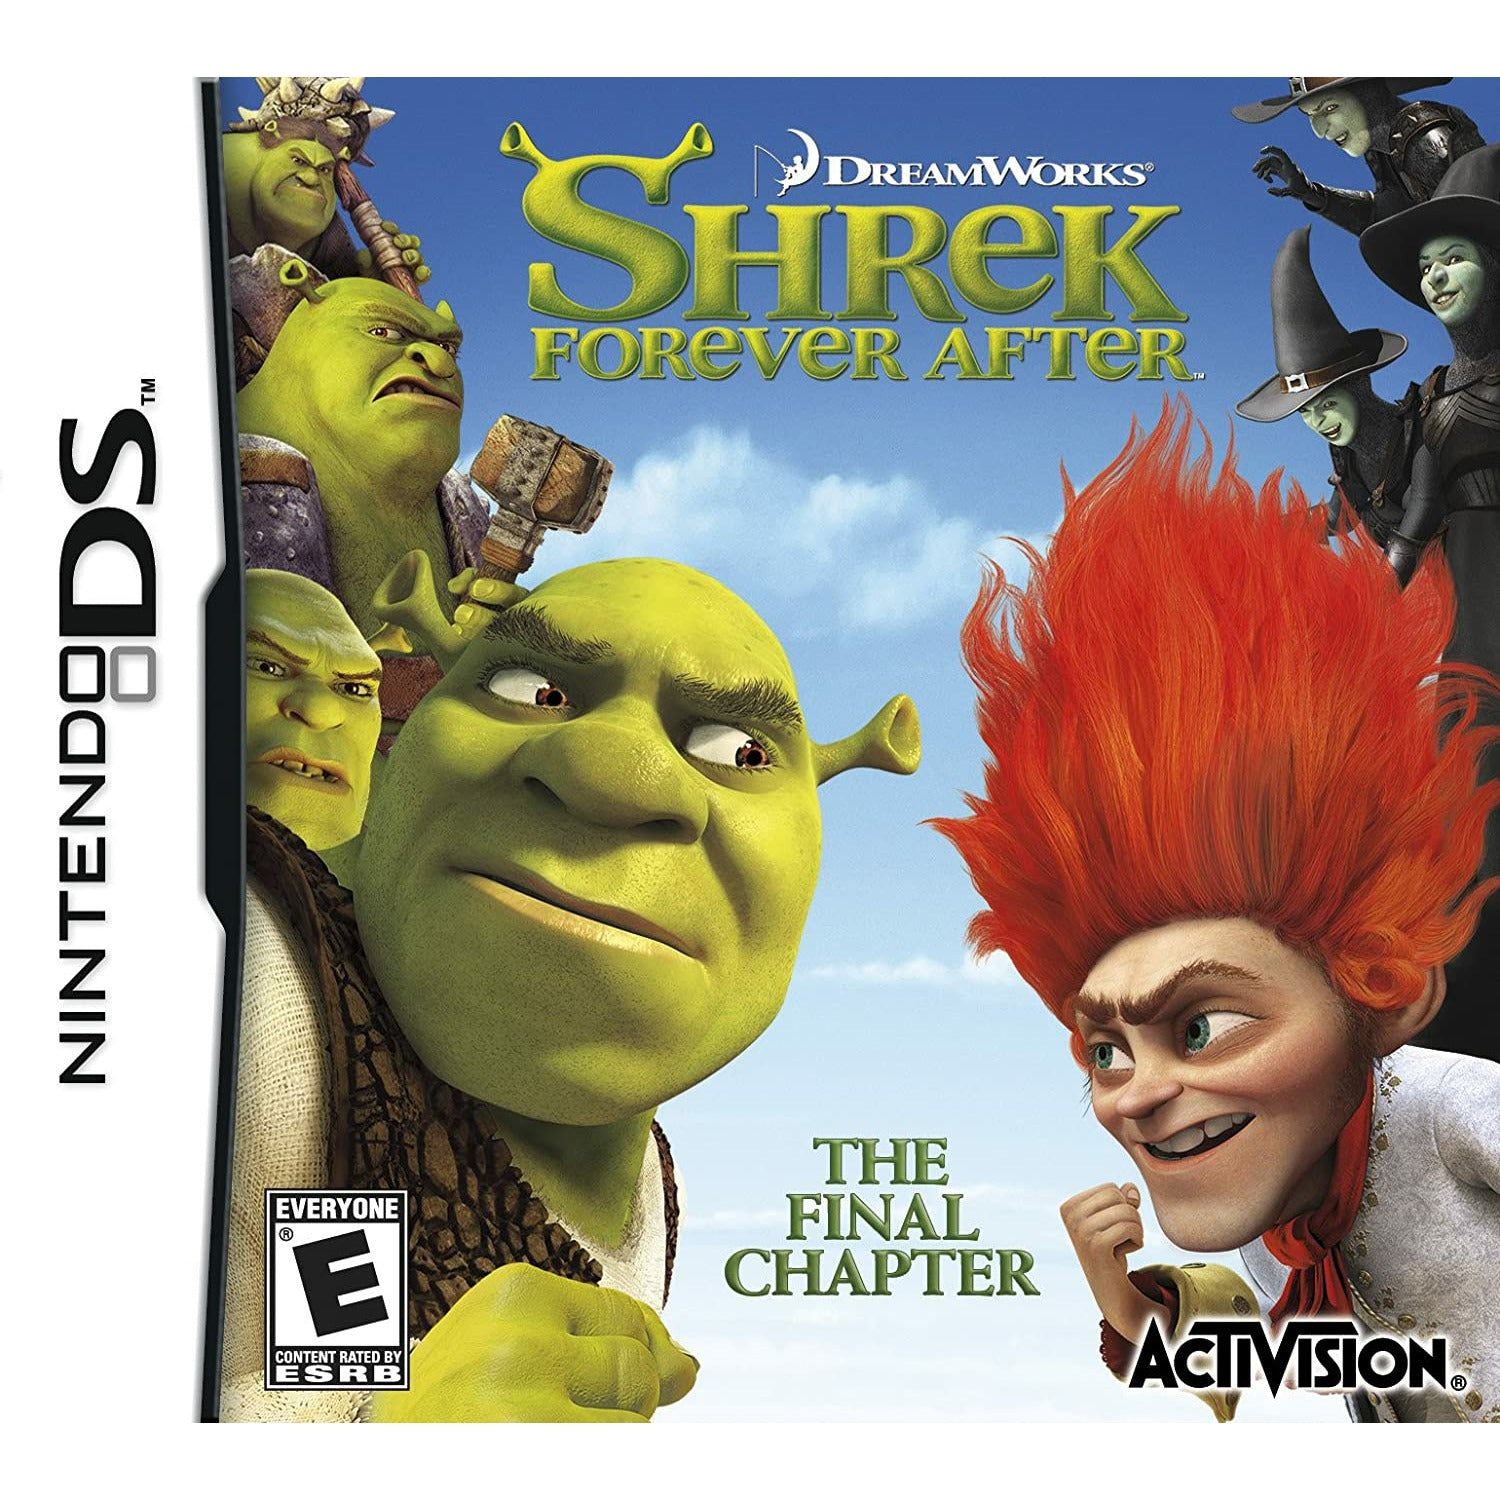 DS - Shrek pour toujours après le dernier chapitre (au cas où)